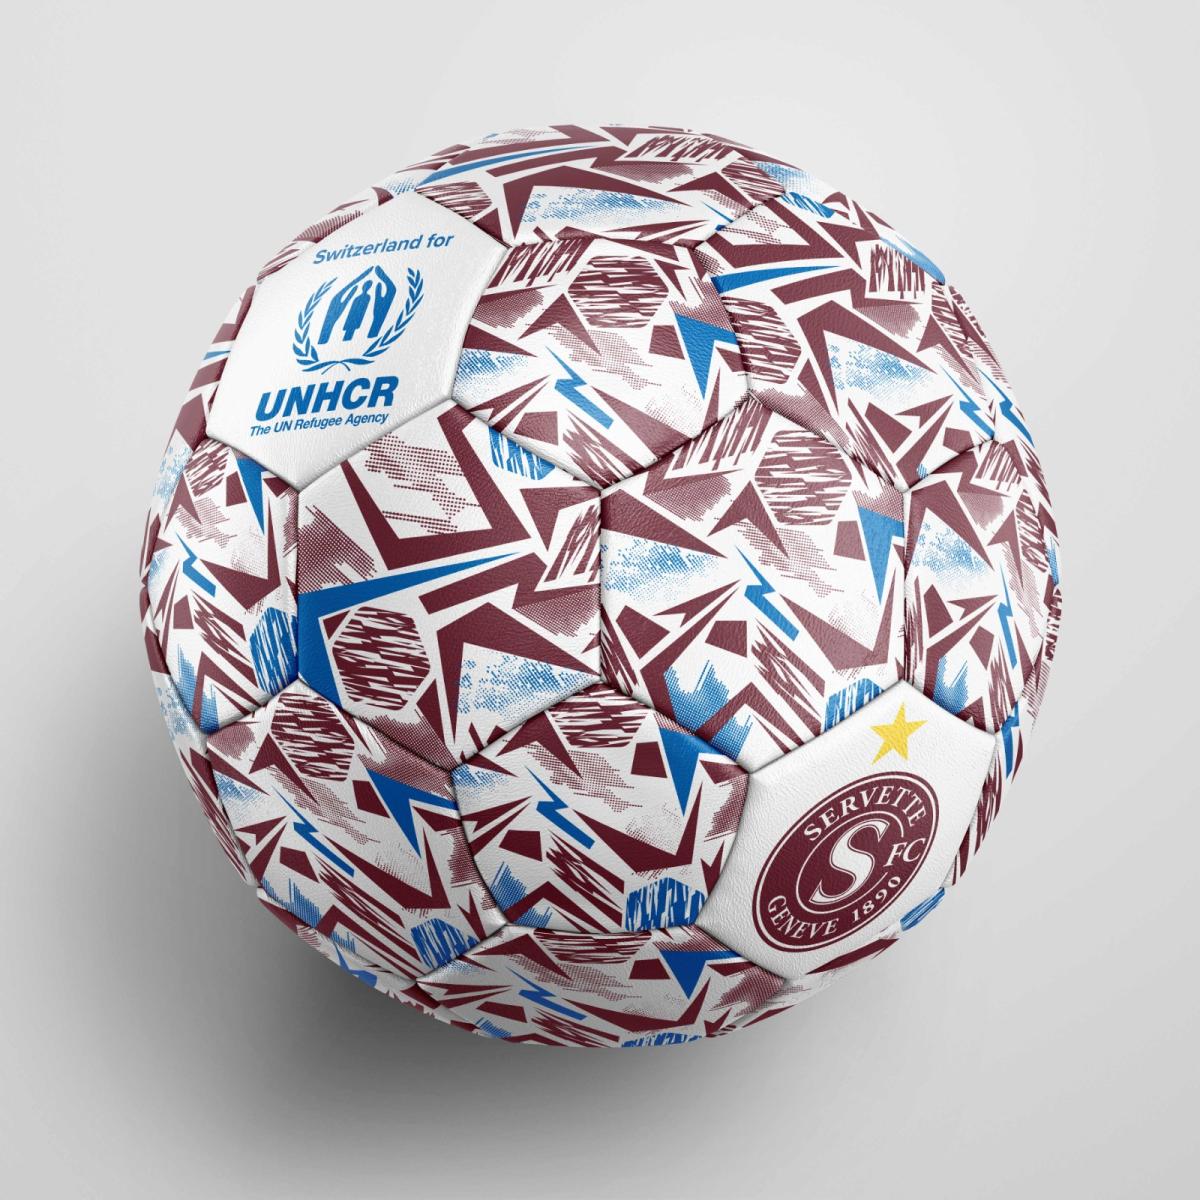 Die Einnahmen aus des Fussballverkaufs werden an UNHCR gespendet, um Menschen zu helfen, die in der Ukraine fliehen müssen.